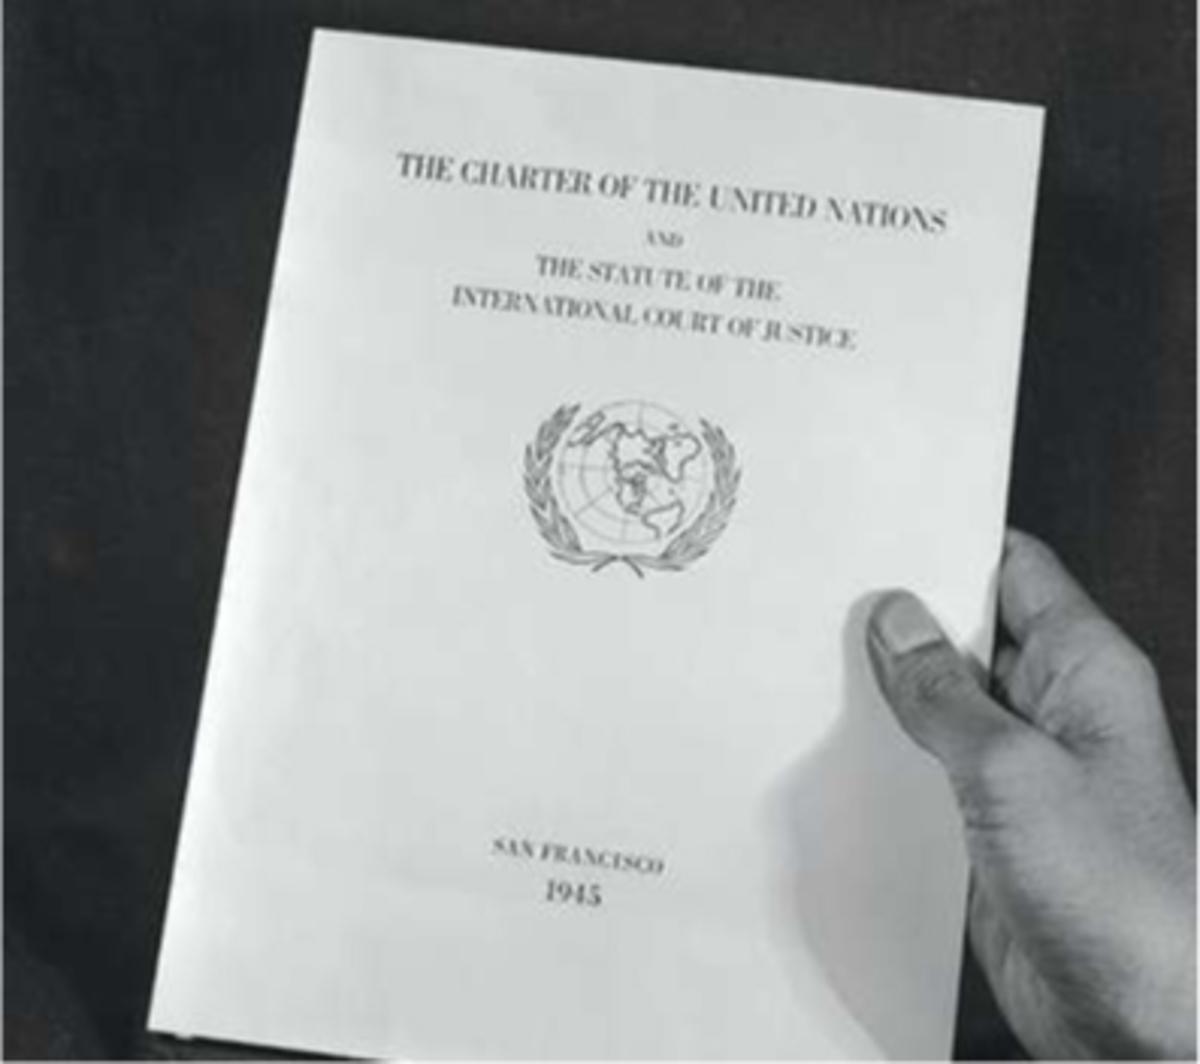 De voorpagina van het Charter van de VN. Het embleem op de voorkant werd gebruikt op alle documenten, pasjes en badges tijdens de conferentie. Het beeld van een kaart van de aarde met de noordpool als middelpunt, omsloten door twee olijftakken, is nog steeds het embleem van de VN.